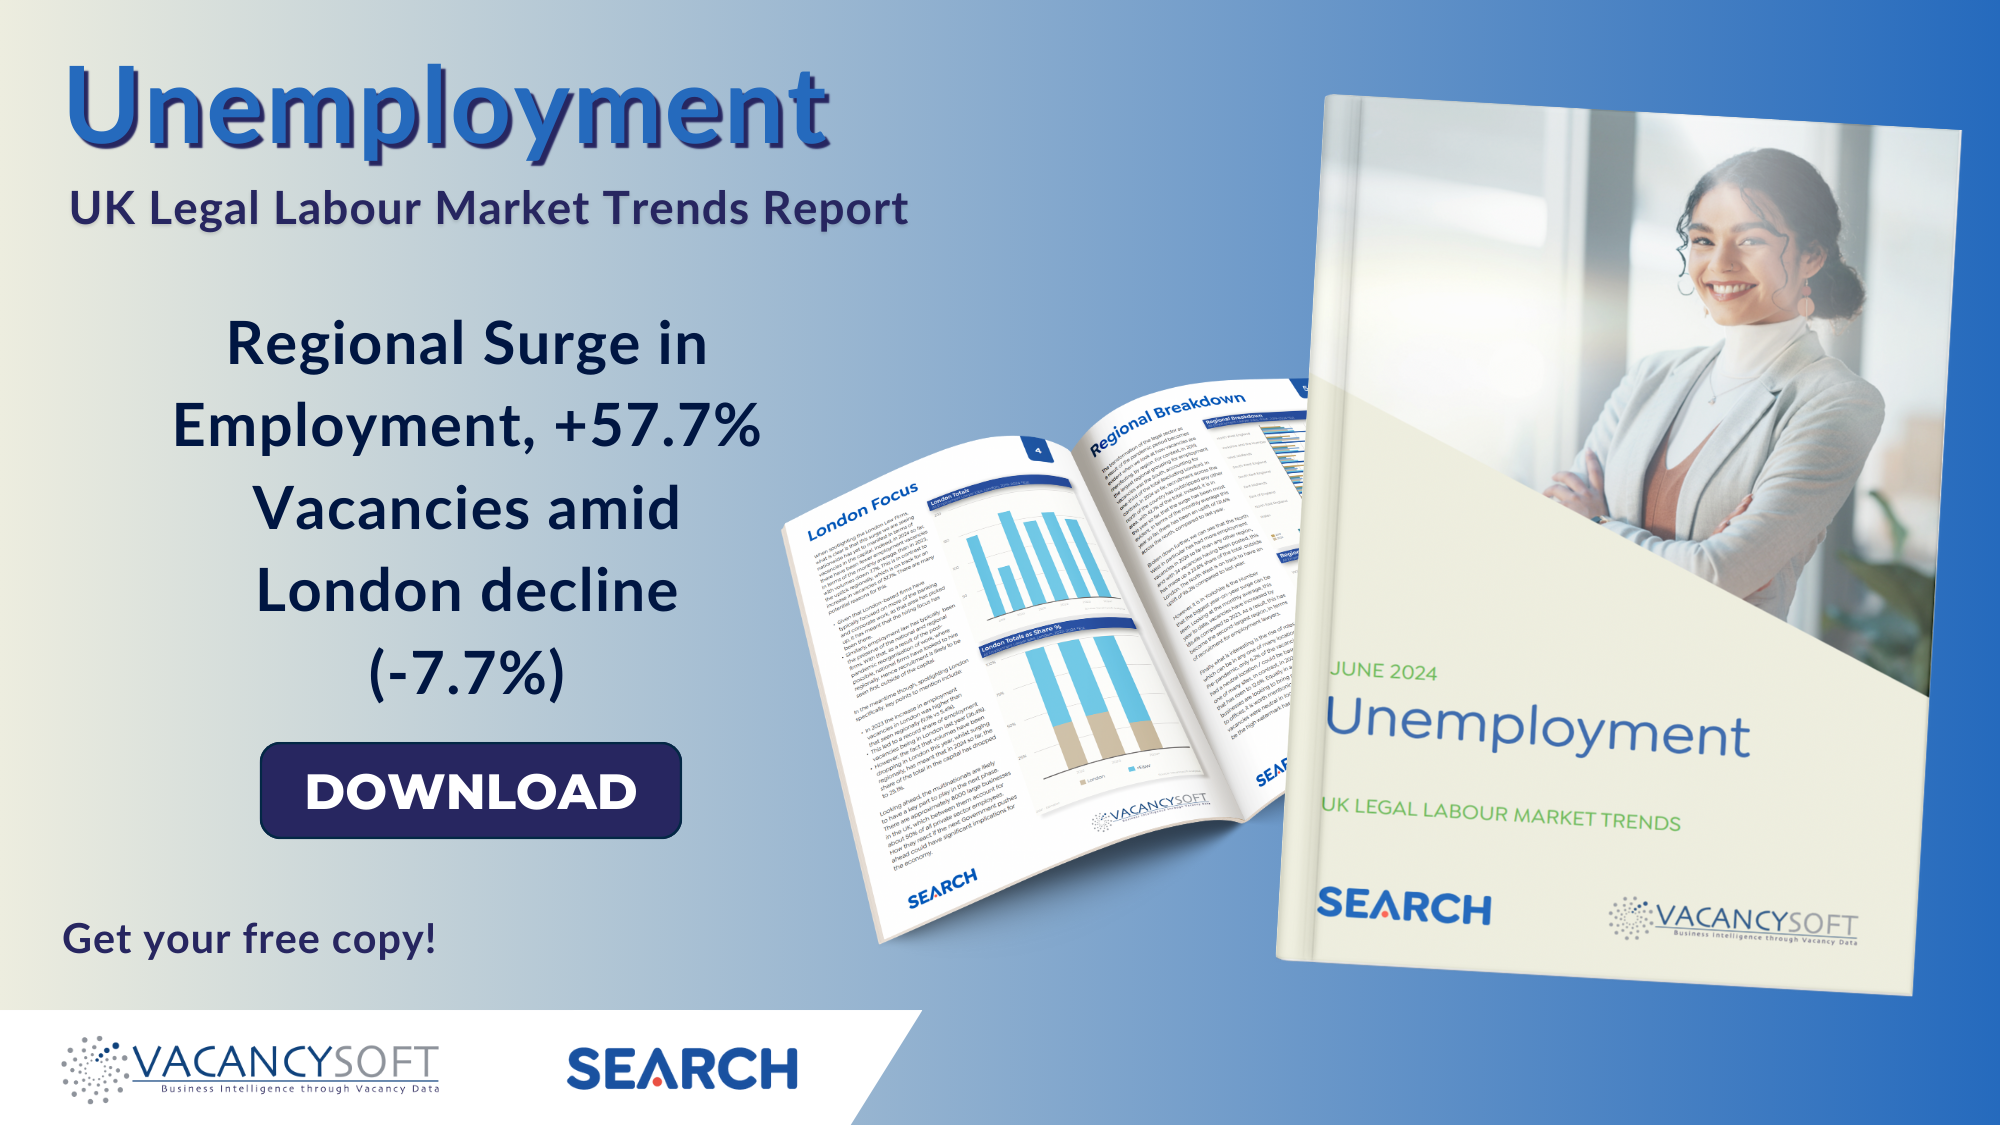 Unemployment – UK Legal Labour Market Trends, June 2024